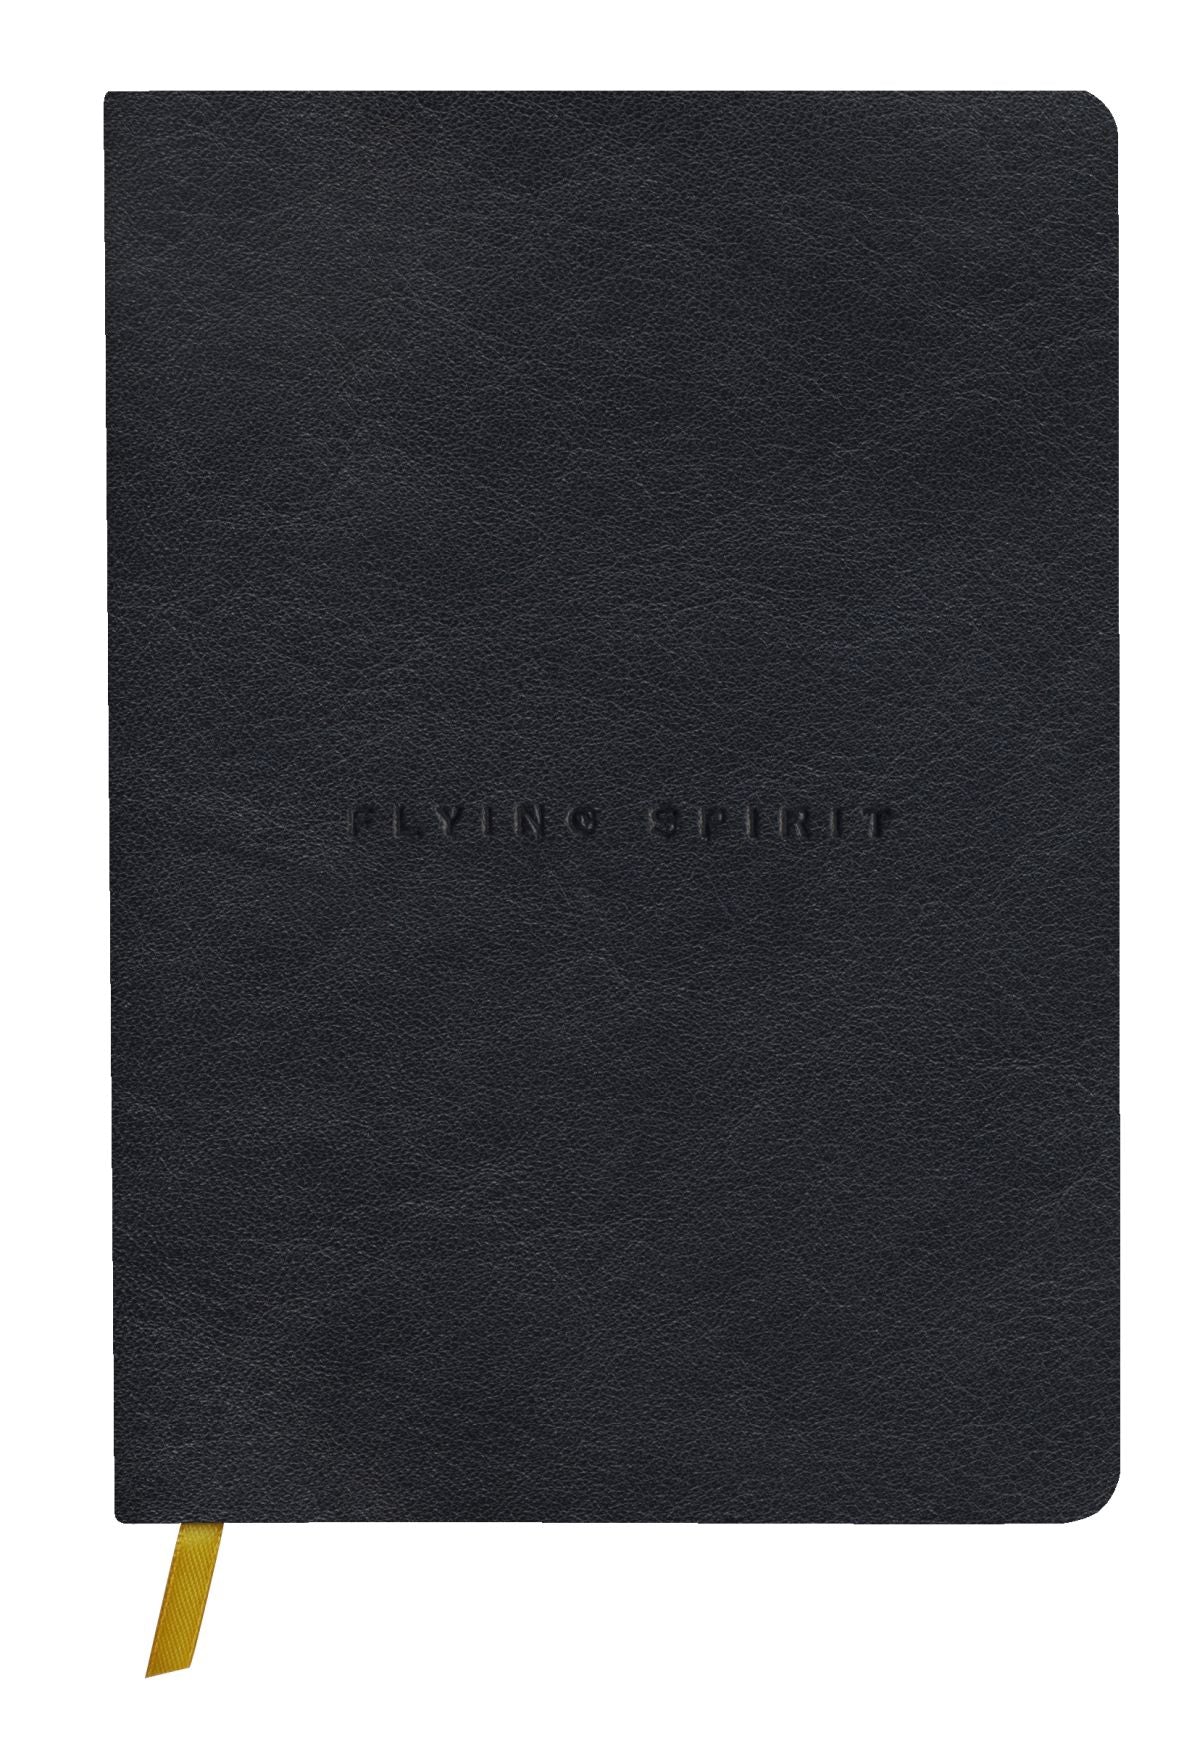 Flying Spirit Notizbuch A5 mit Ledereinband, schwarz dotted